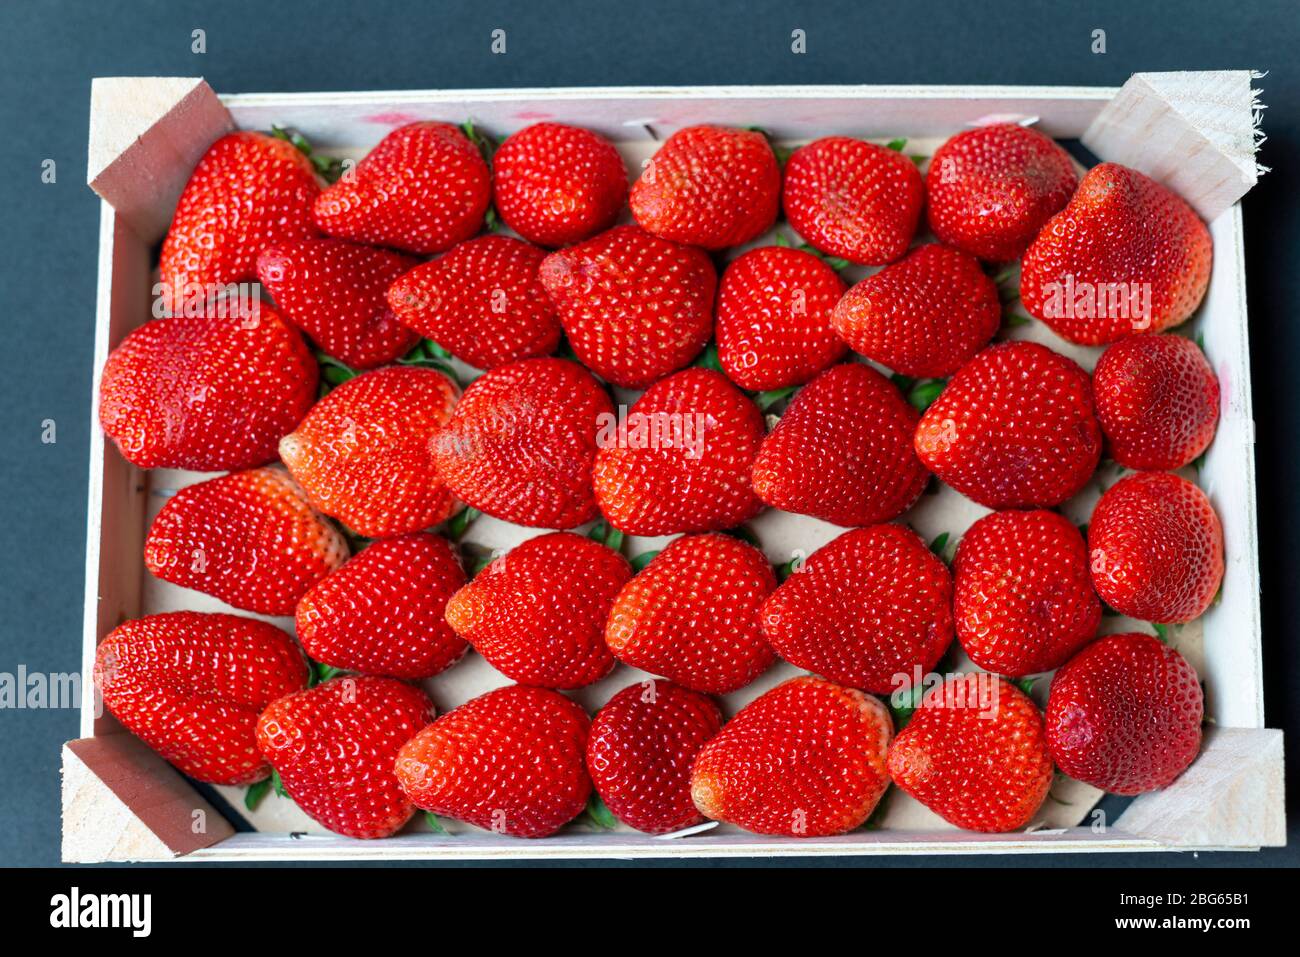 Les fraises de Huelva du marché hebdomadaire de Calldetenes près de Vic, elles semblent super Banque D'Images